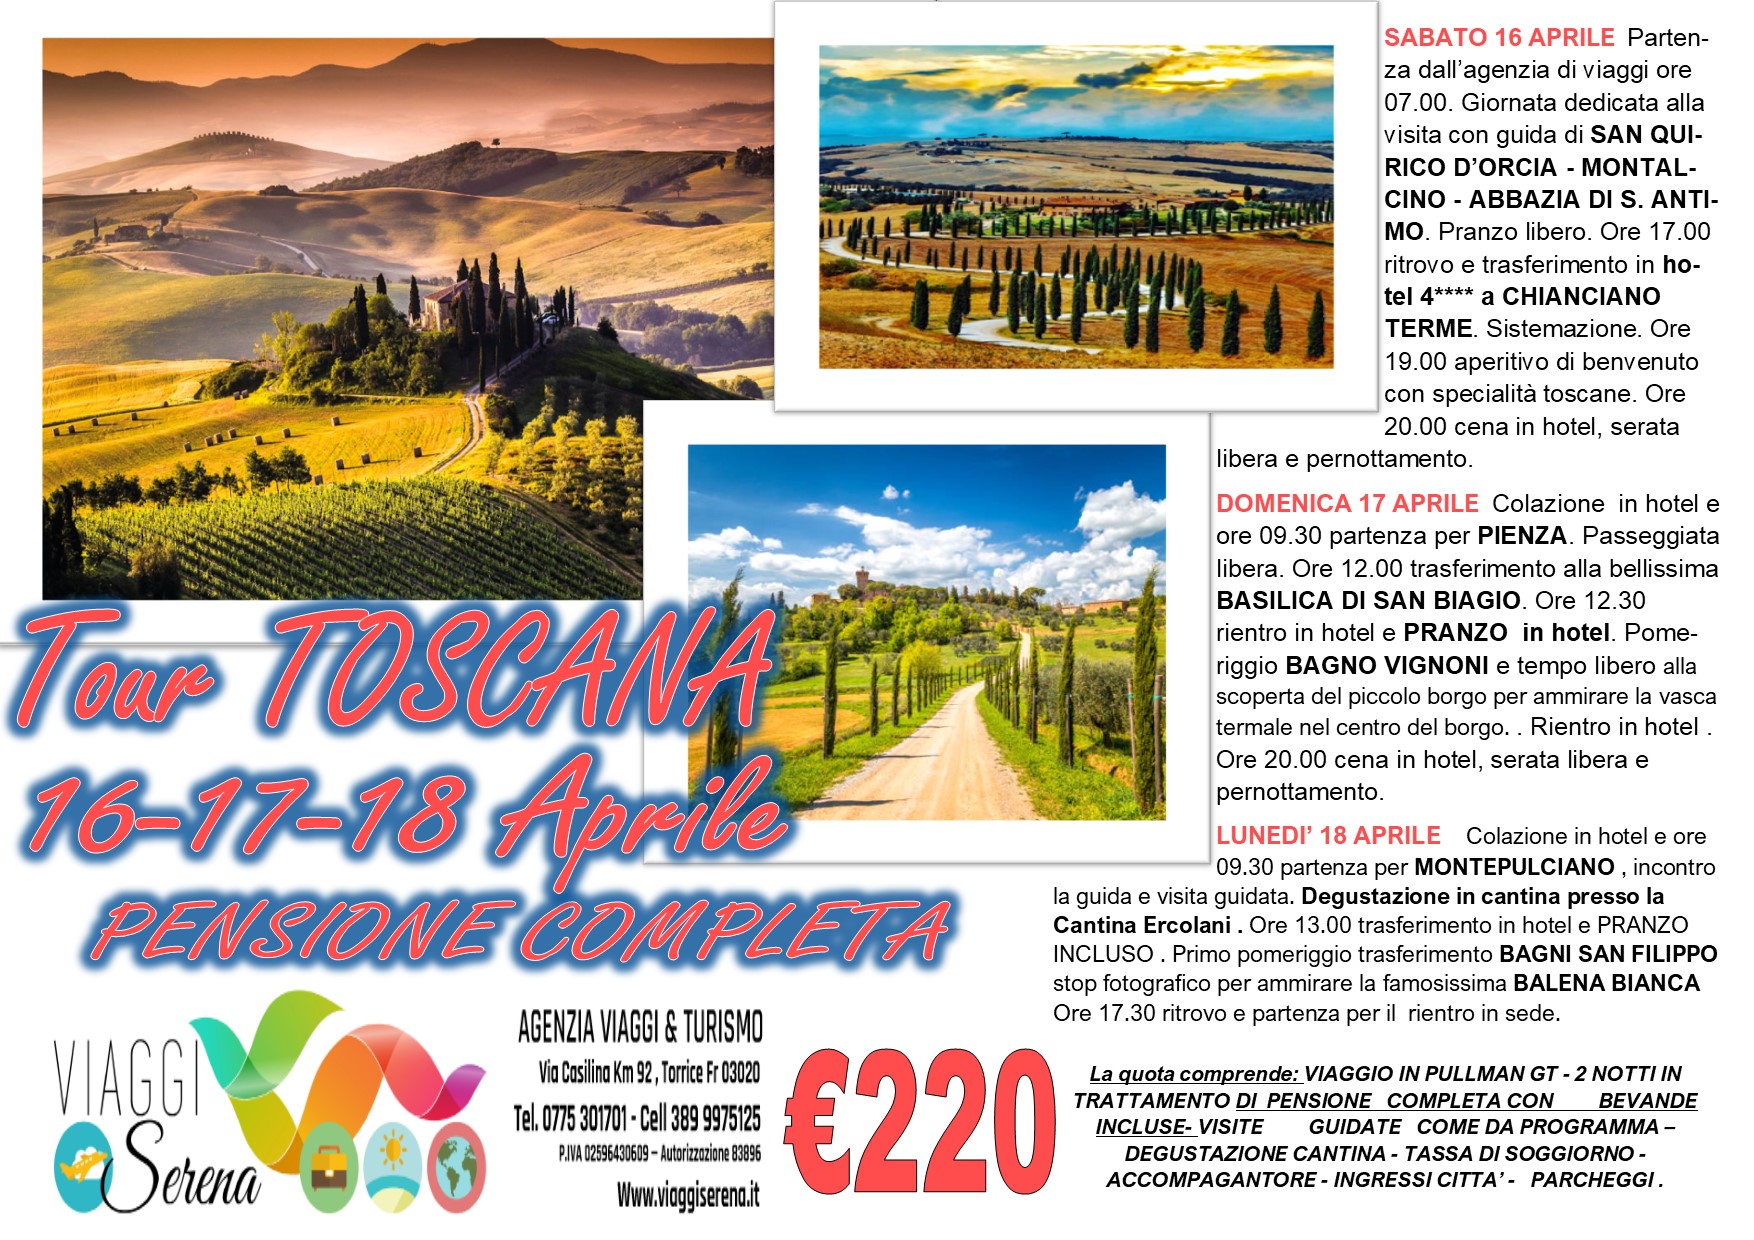 Viaggi di Gruppo: Tour Toscana, San Quirico, Pienza, Bagno Vignoni & Montepulciano 16-17-18 Aprile  €220,00